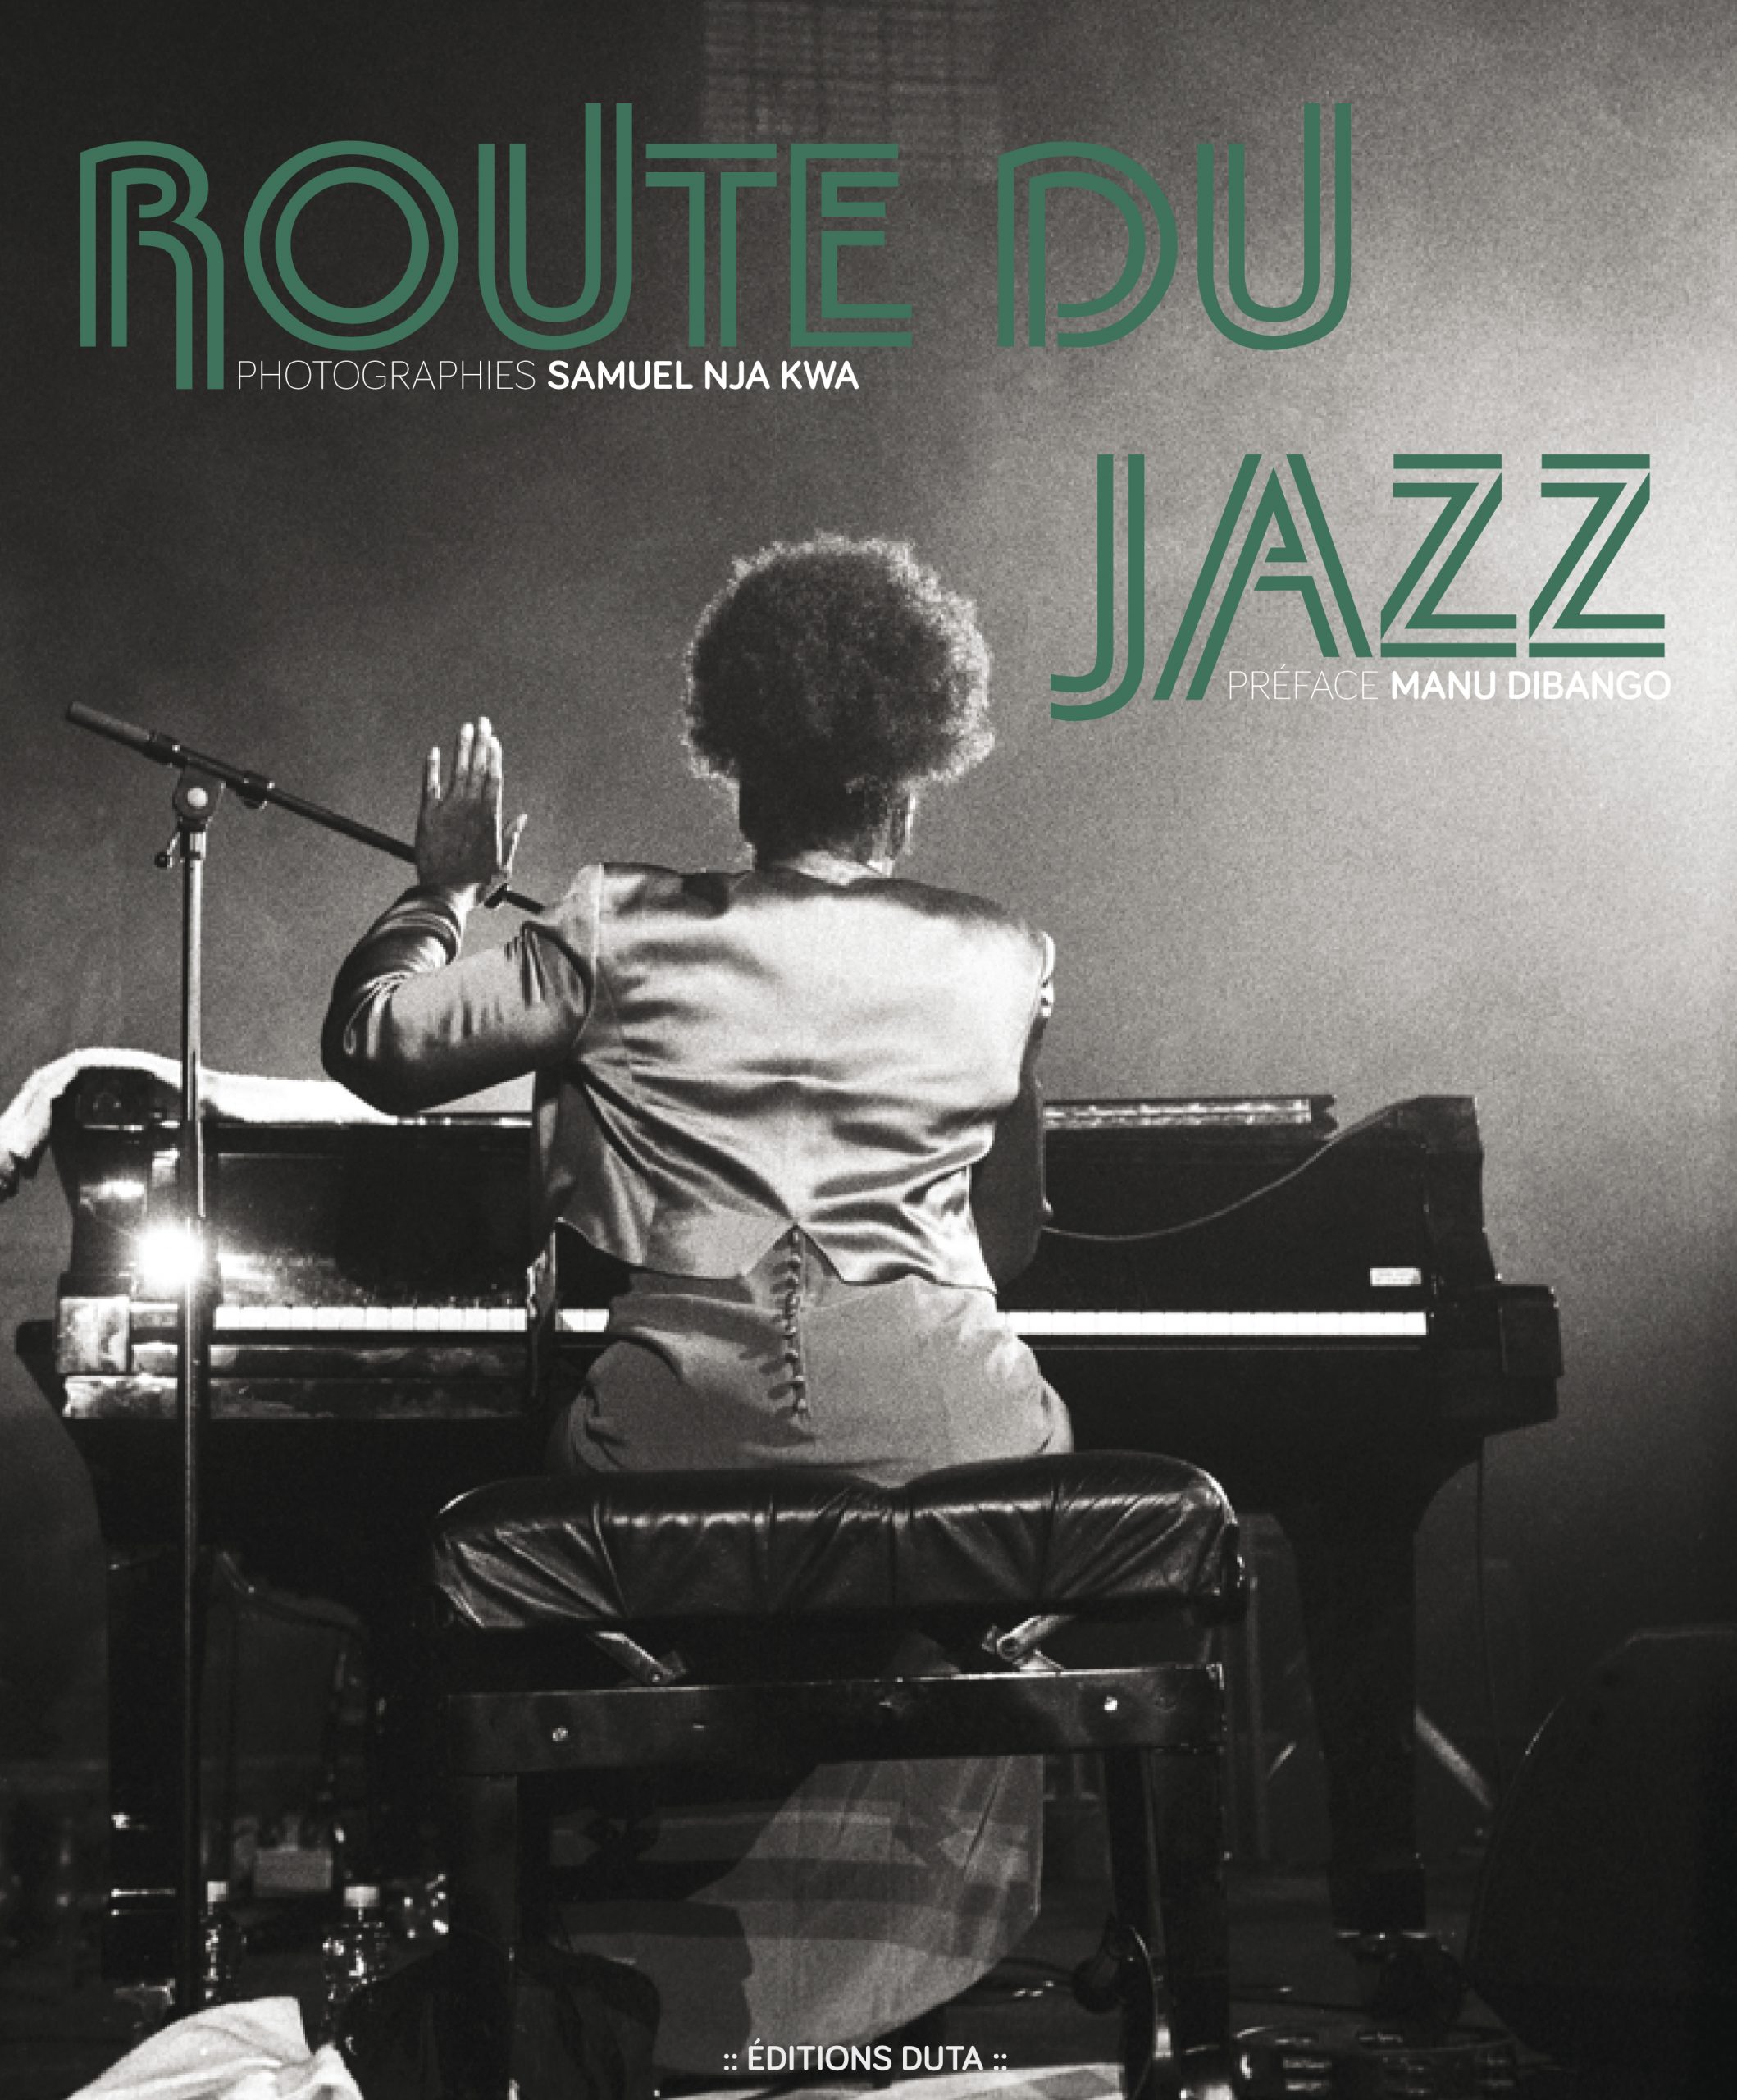 Samuel Nja Kwa trace la route du "Jazz"